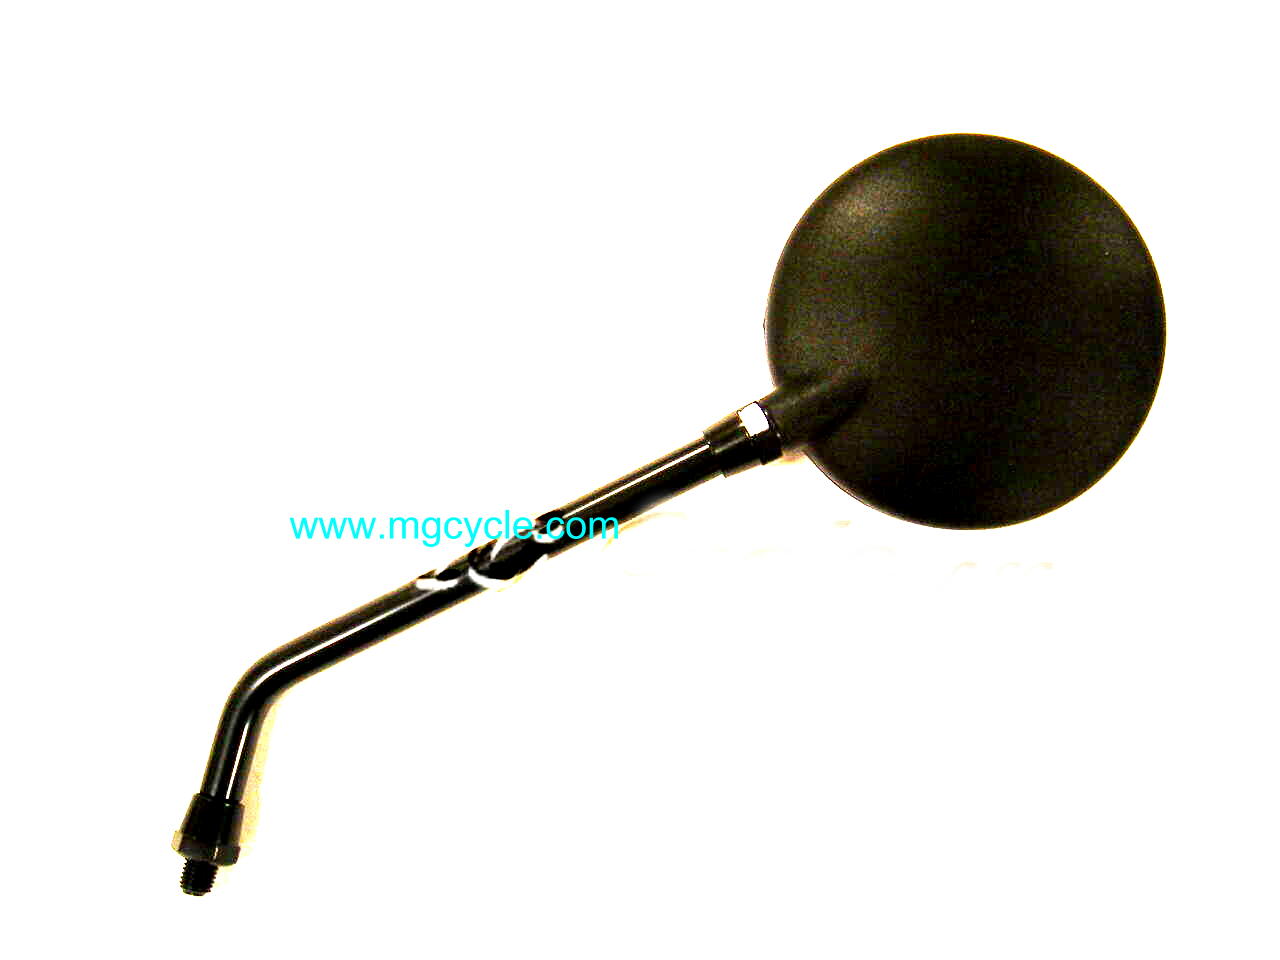 Black round mirror, screw in, 10 inch stem